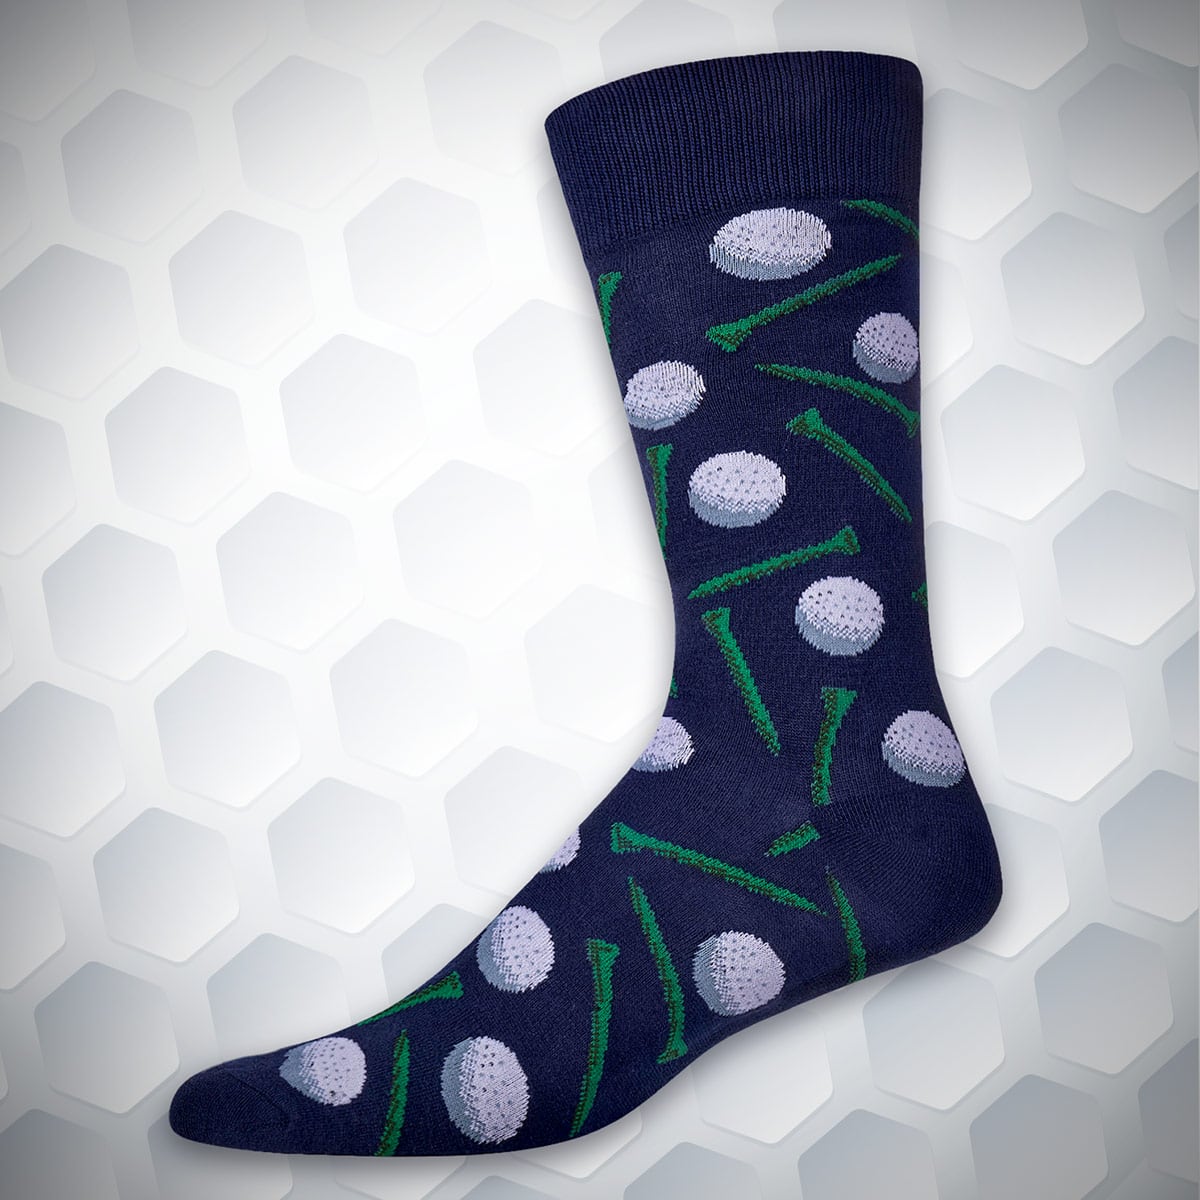 Fairway Golf Socks for Men